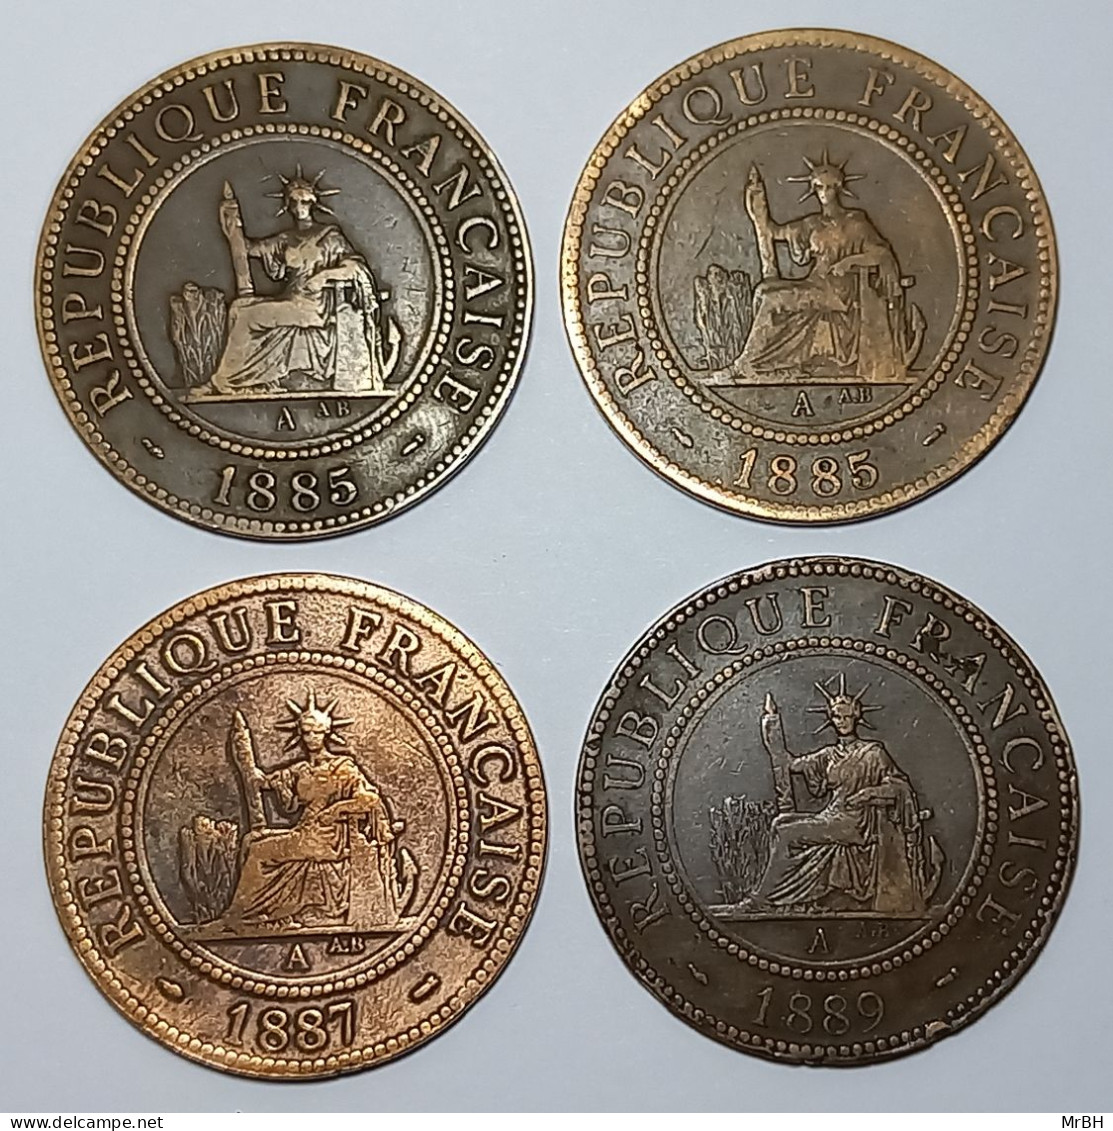 France, Indochine, 1 Centième 1885-1889 (4 Monnaies) - Indocina Francese